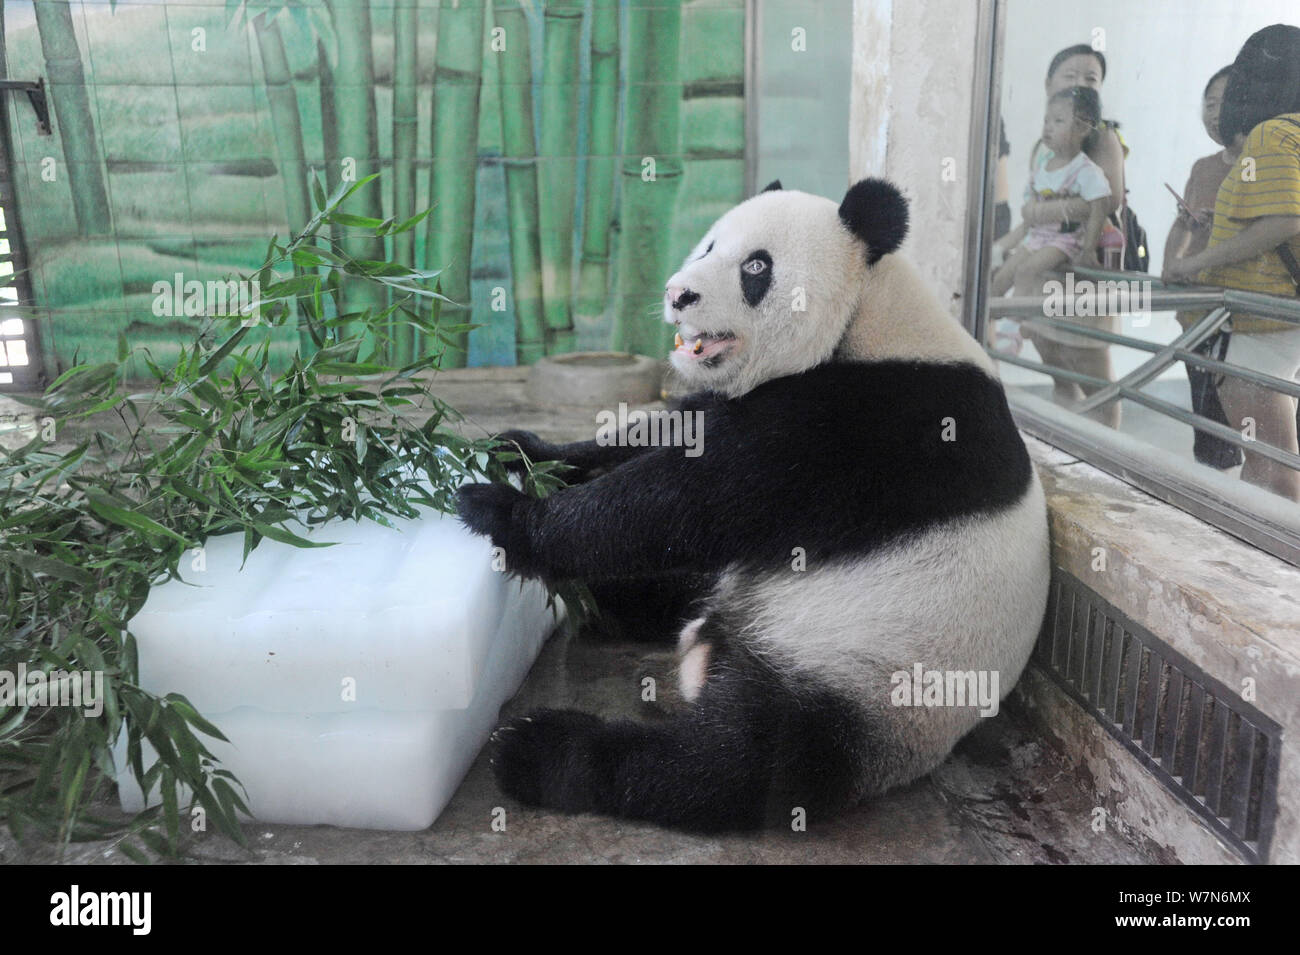 Panda gigante Weiwei come brotes de bambú alrededor de enormes bloques de hielo para refrescarse en una habitación con aire acondicionado en el Zoológico de la ciudad de Wuhan en Wuhan, China central de Hubei Foto de stock